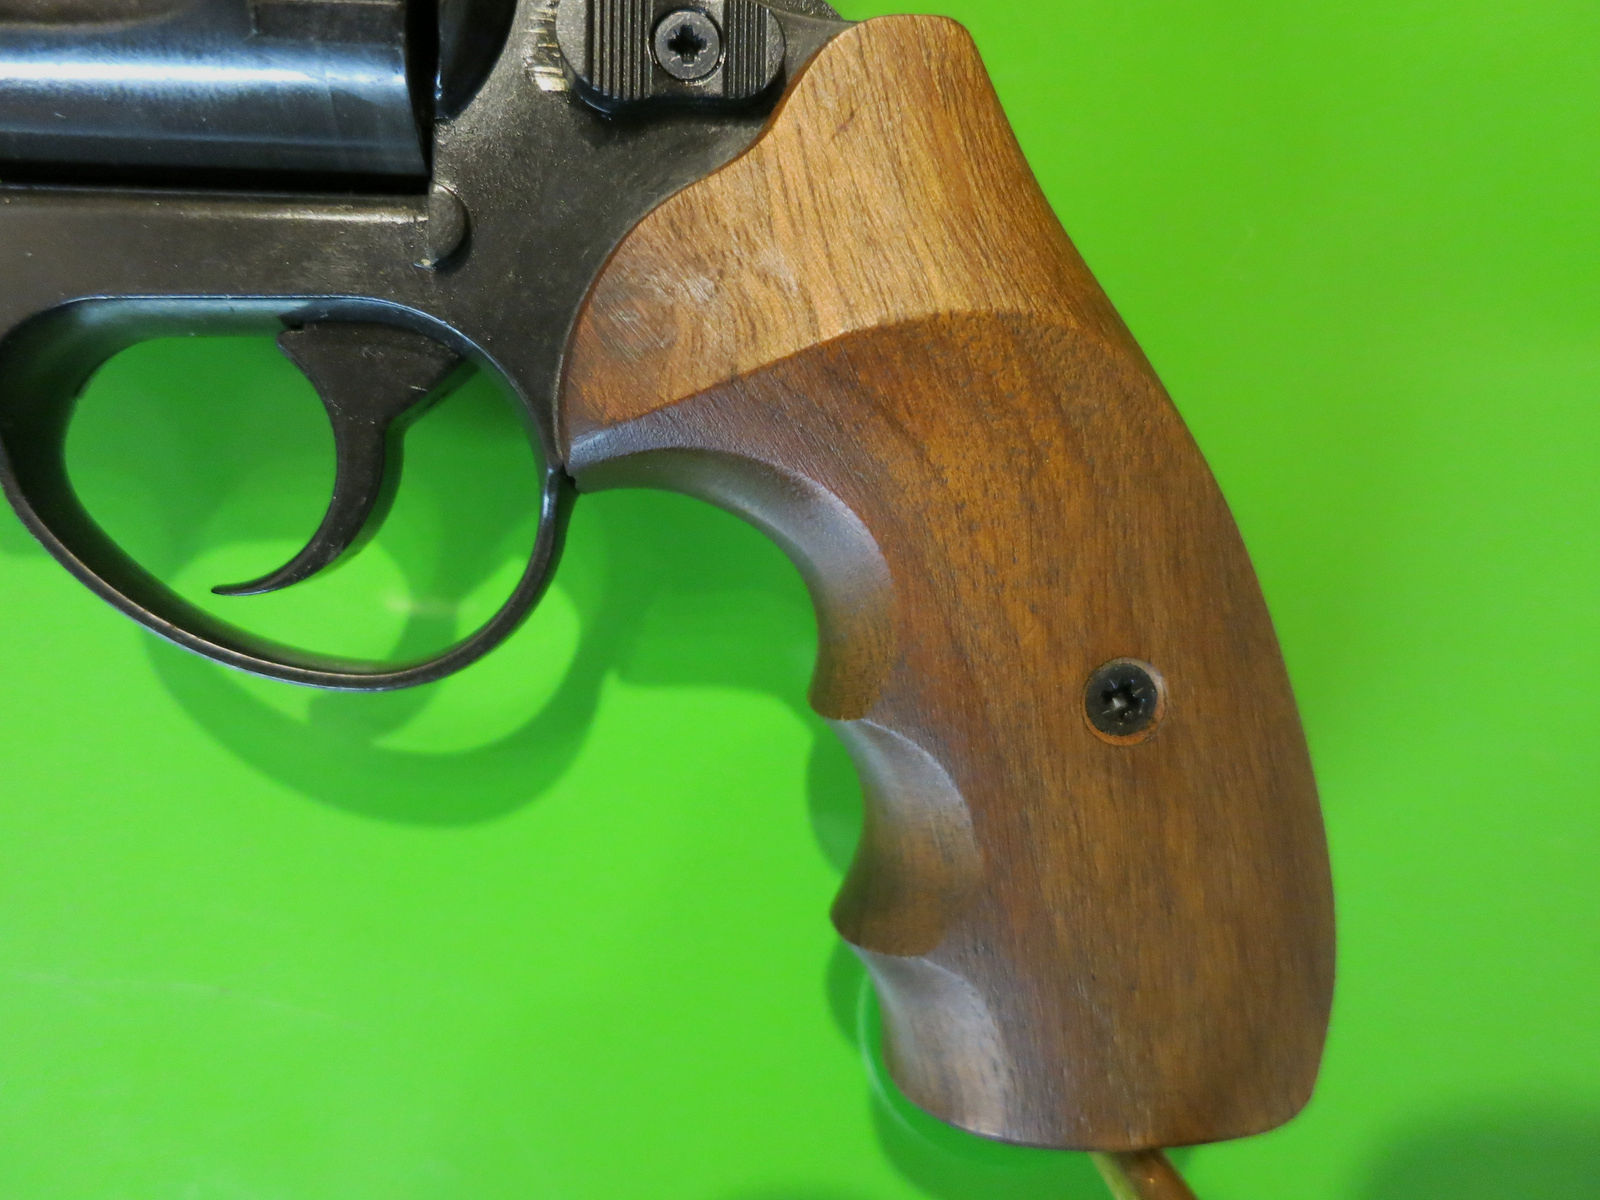 ME Cuno Melcher Mod. ME38 Magnum 4-R, 3" Lauf, 4 mm M20   #49